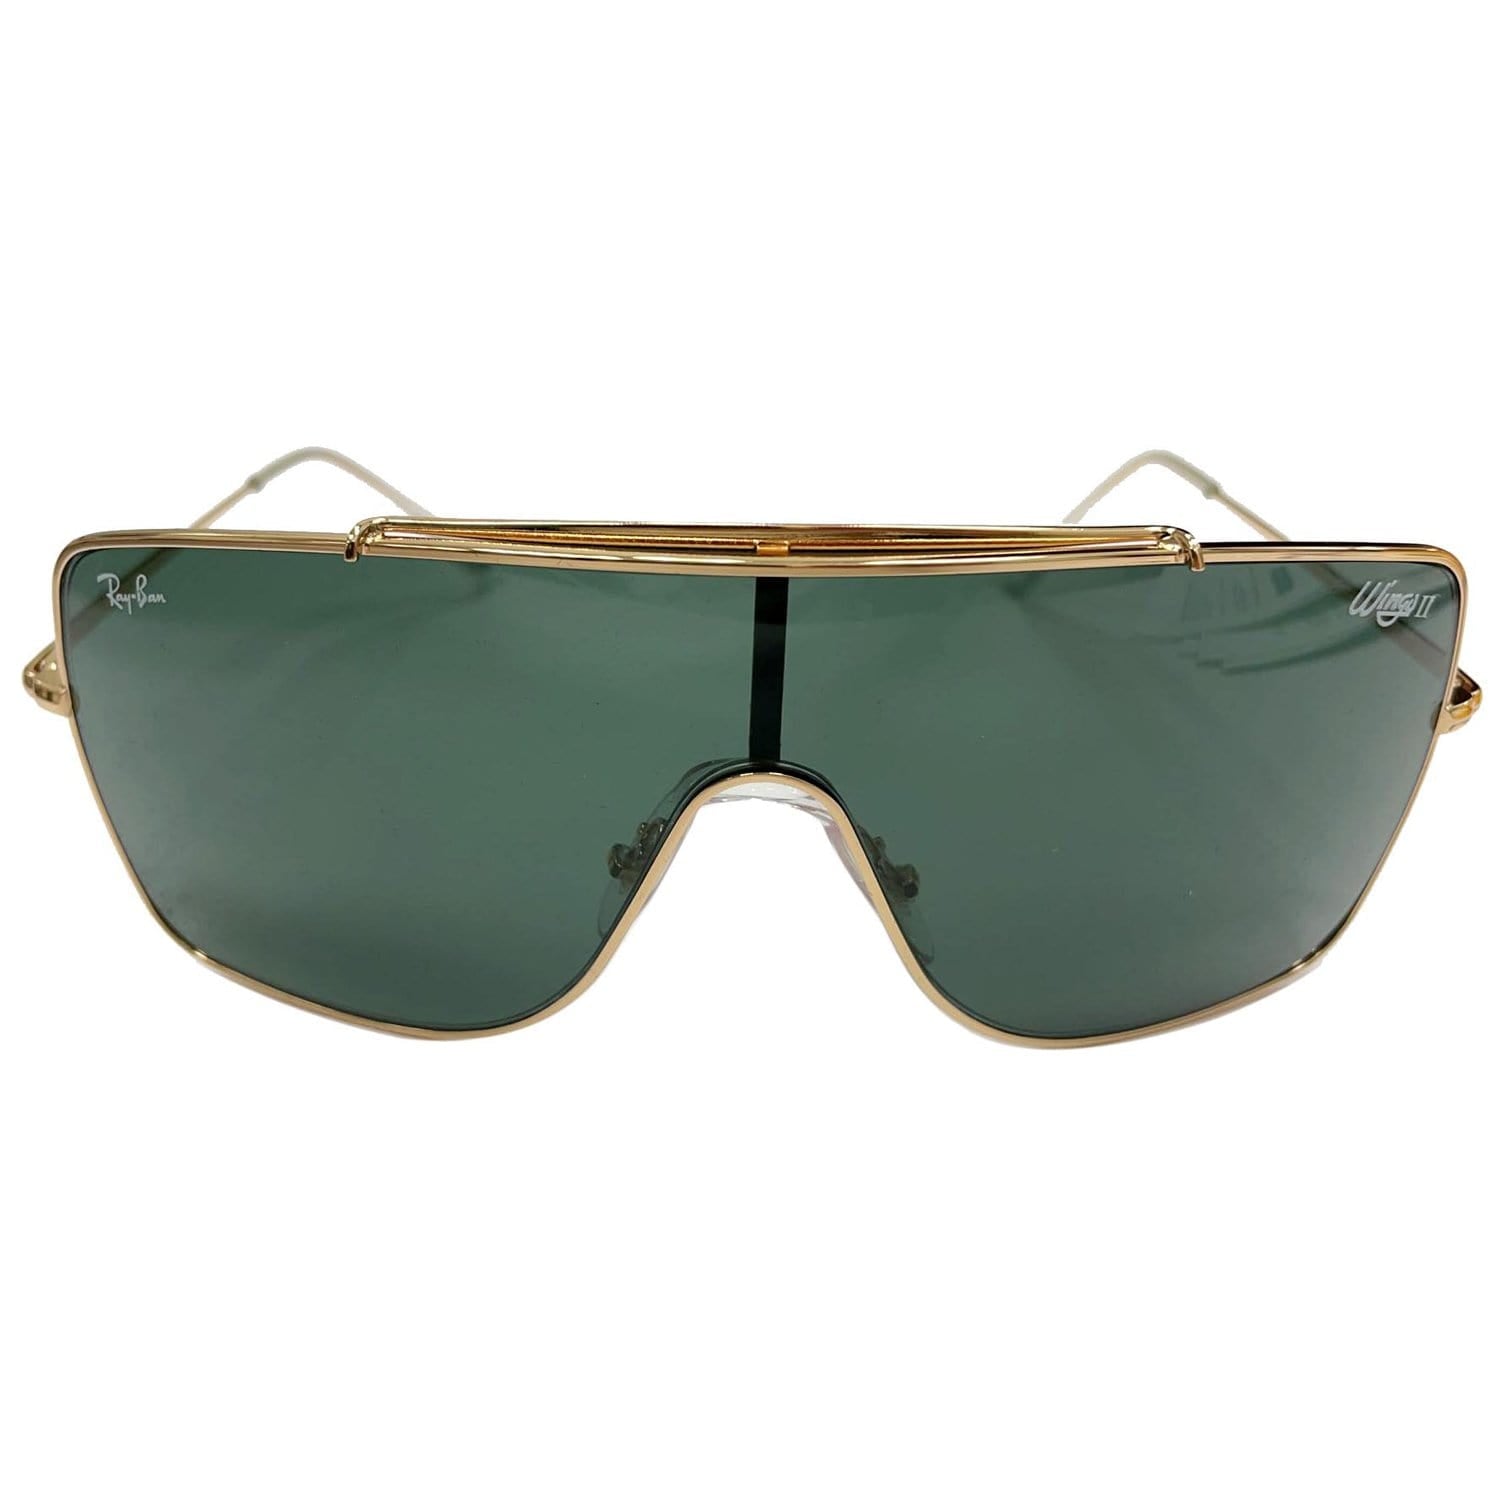 First Copy Sunglasses  1st Copy RayBan Replica Prada Gucci Dior